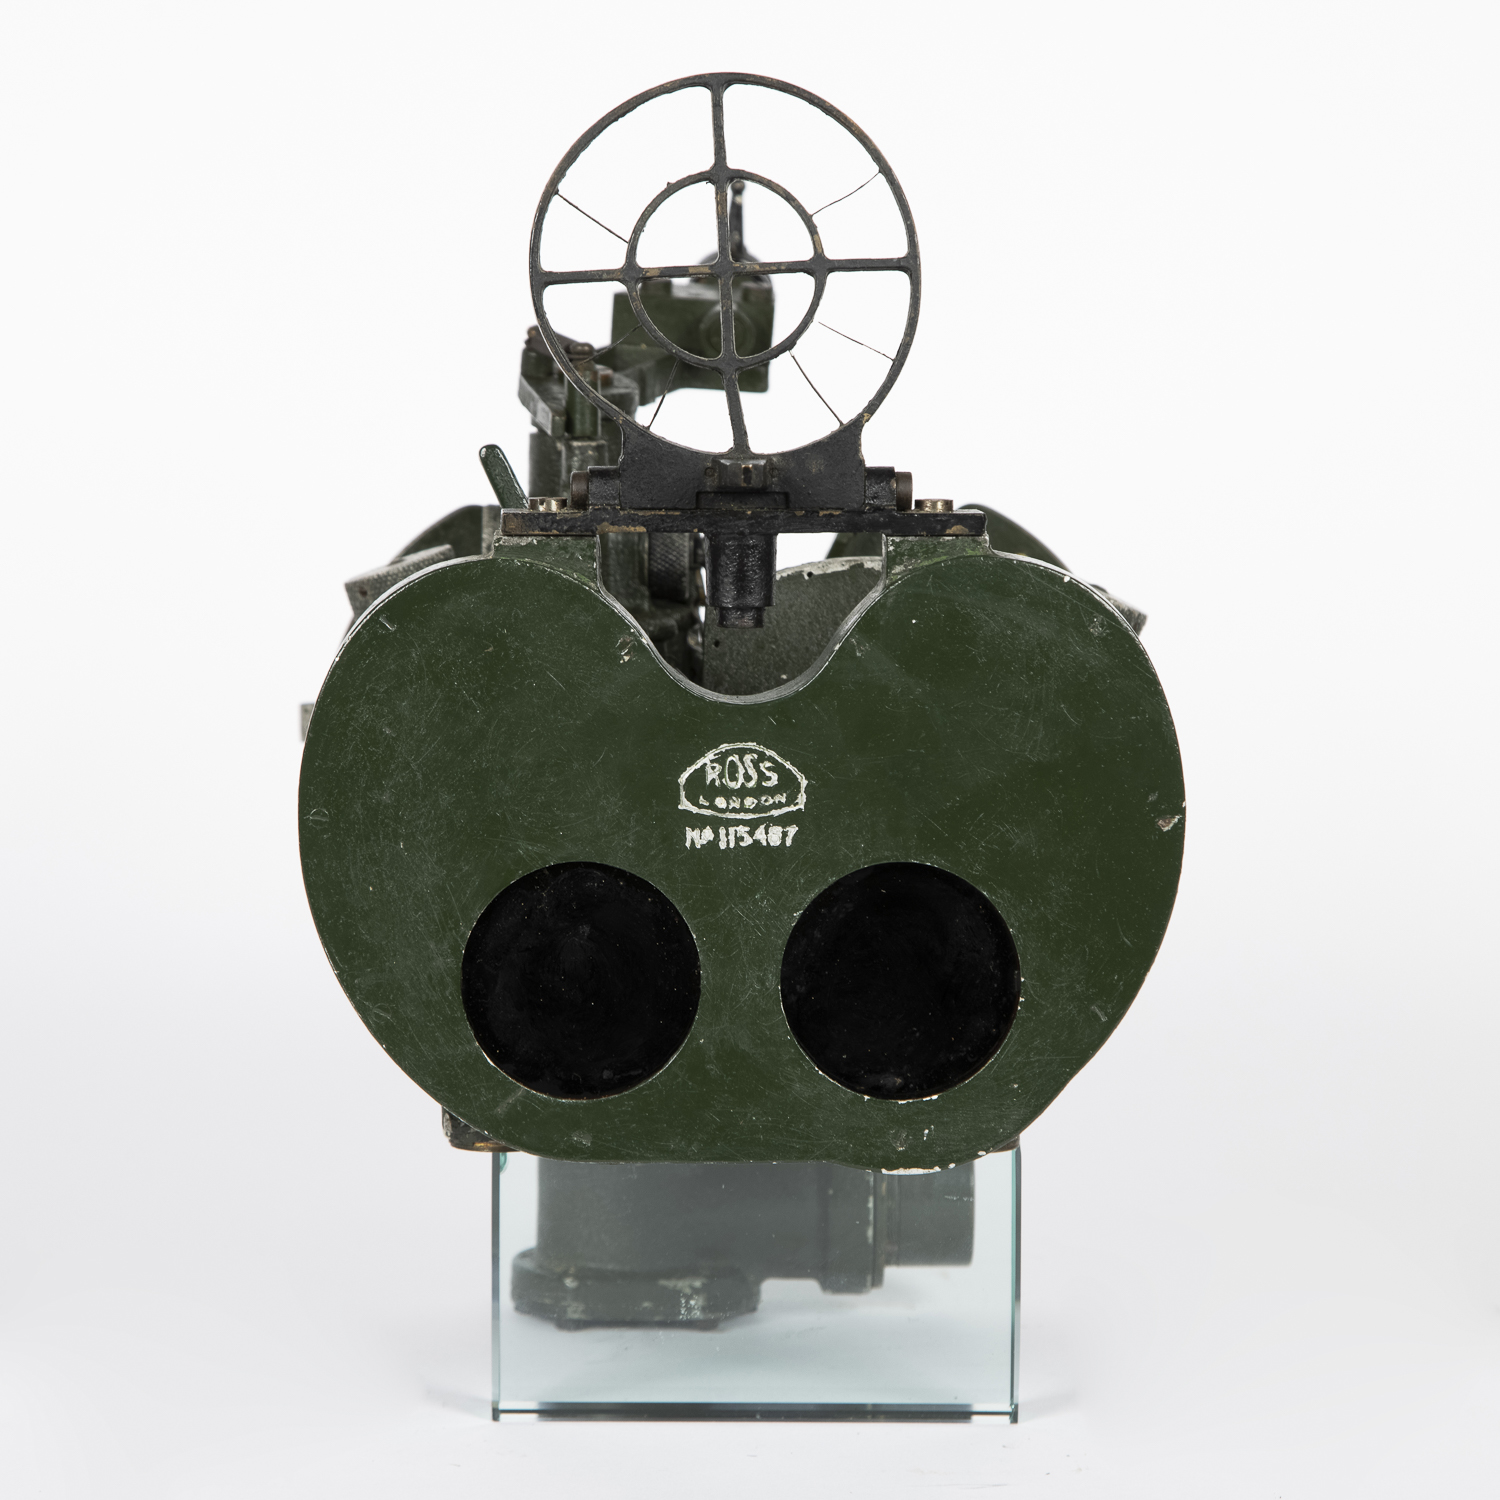 WWII G364 binocular sight by Ross